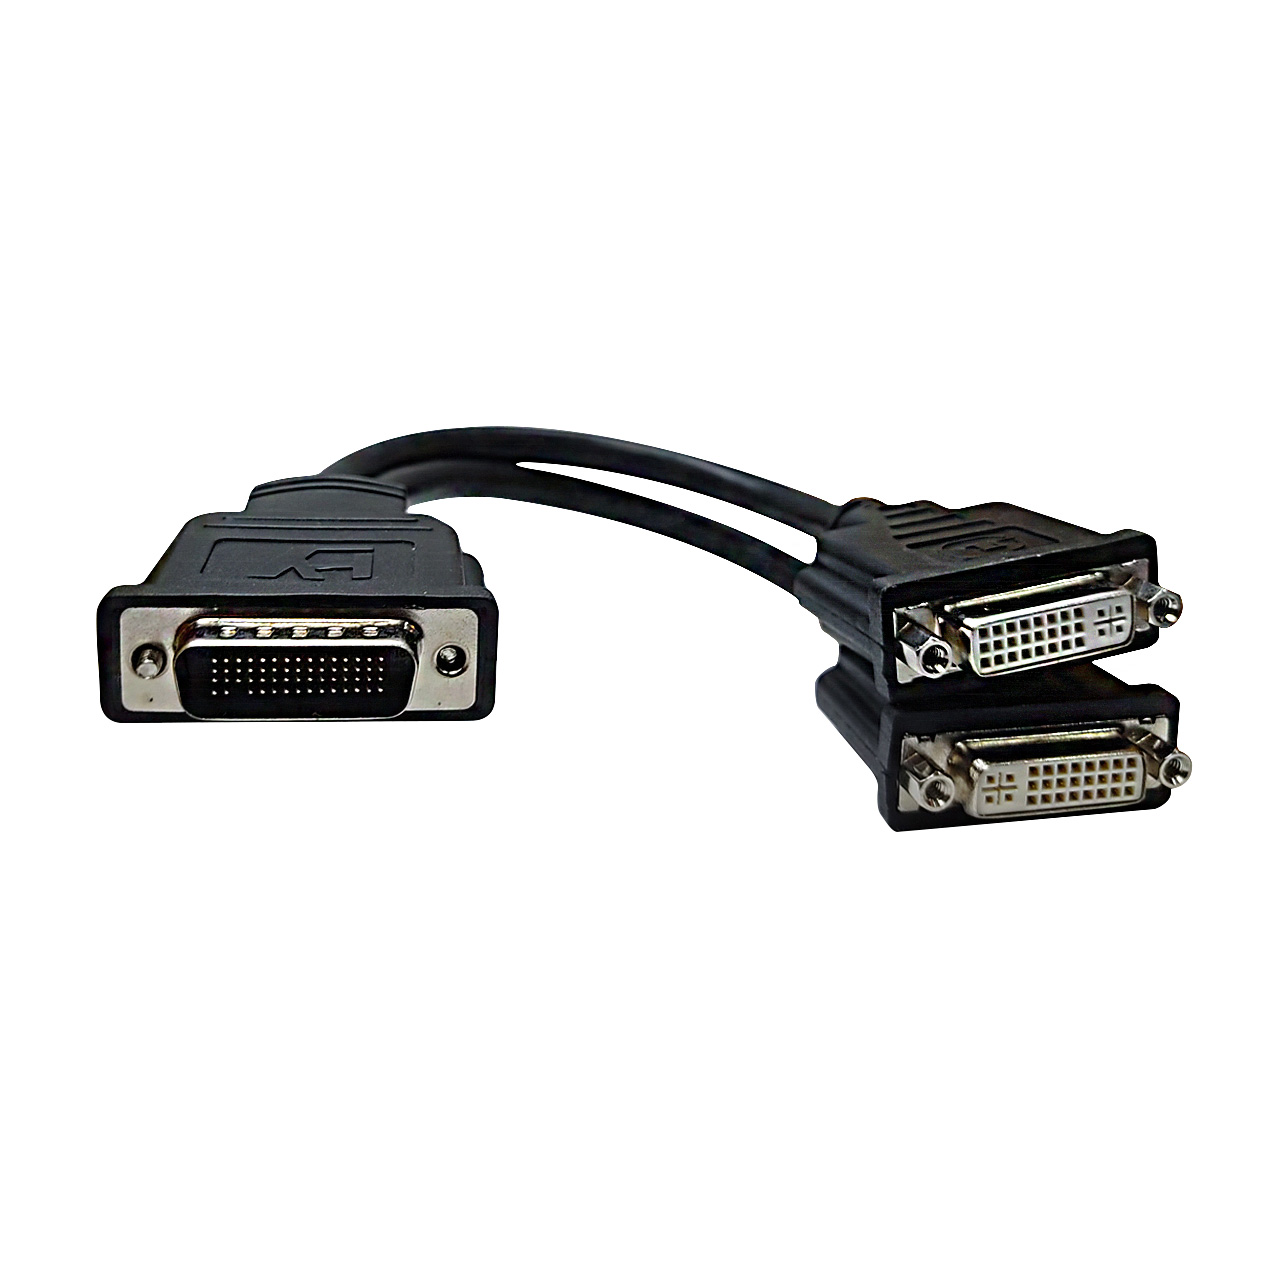 تبدیل 59 پین نری DVI به دو سر مادگی DVI برند ZICO 

ZICO 59 PIN Male DVI Port to 2 Female DVI Port Converter